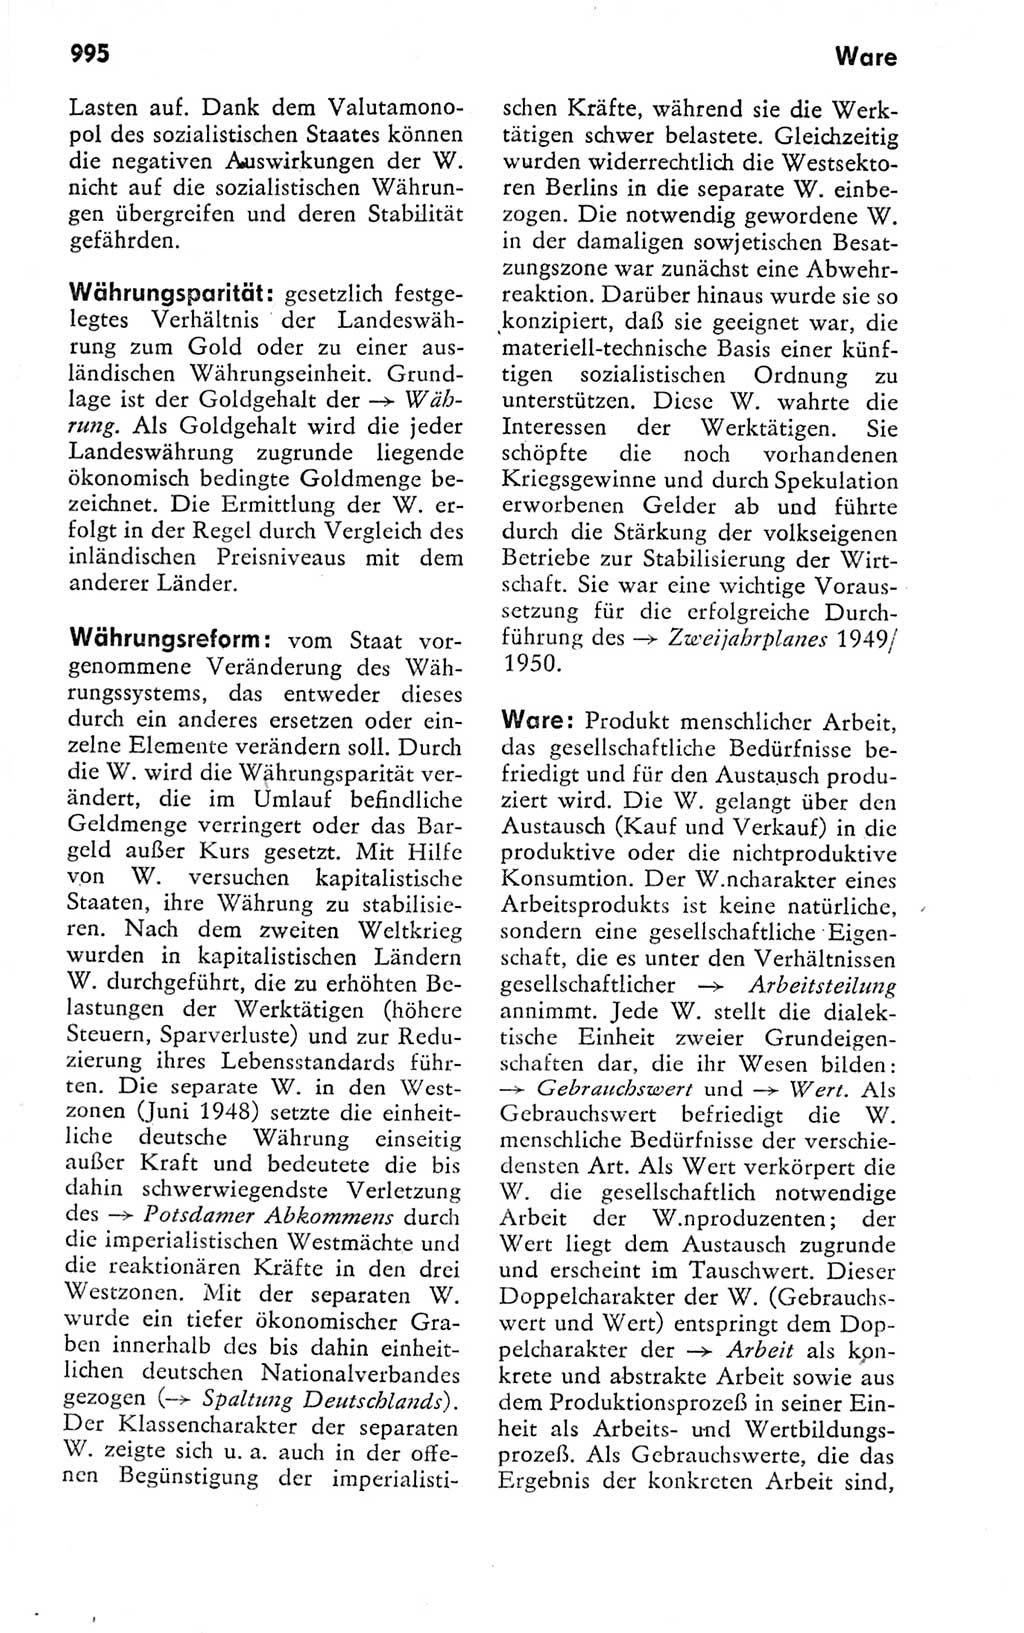 Kleines politisches Wörterbuch [Deutsche Demokratische Republik (DDR)] 1978, Seite 995 (Kl. pol. Wb. DDR 1978, S. 995)